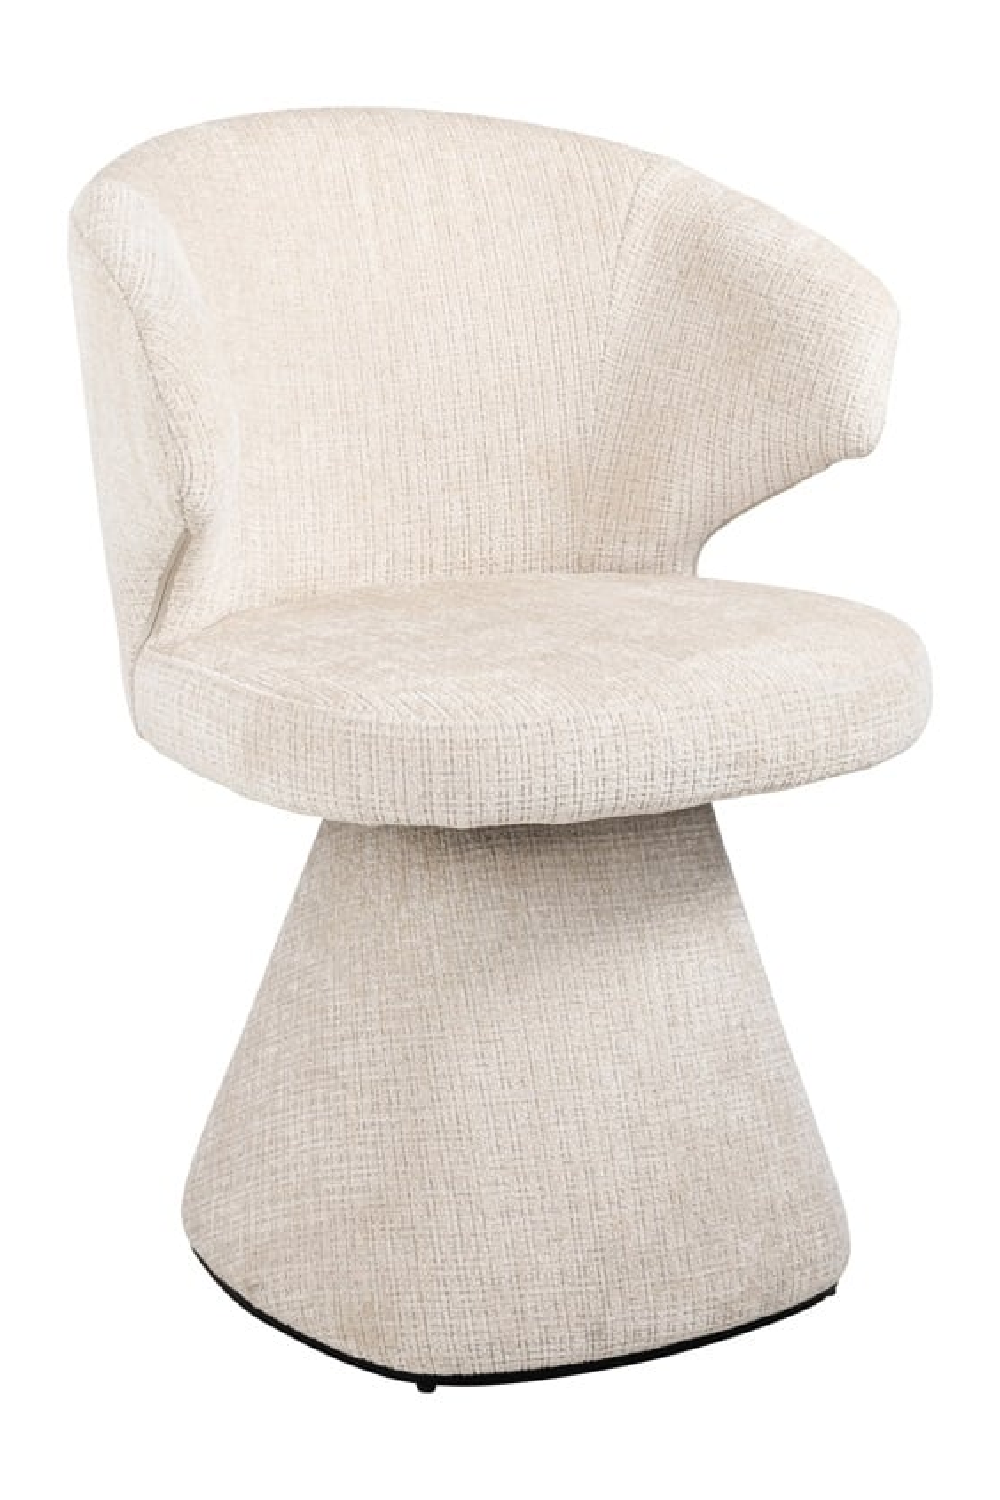 Beige Pedestal Armchair | OROA Gatsbi | Oroa.com